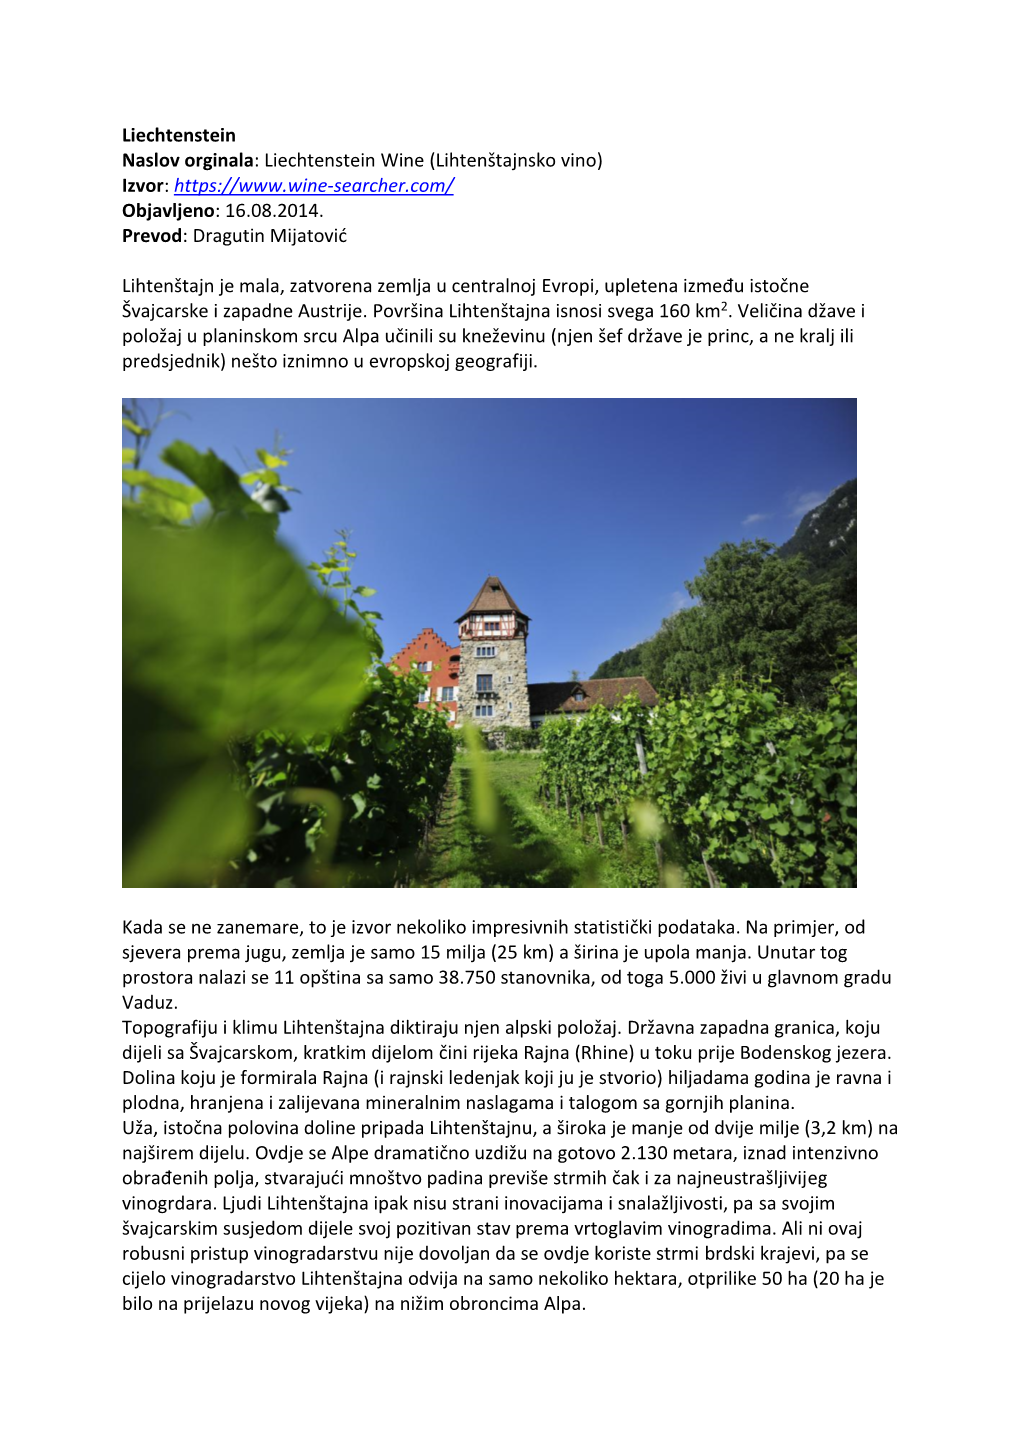 Liechtenstein Naslov Orginala: Liechtenstein Wine (Lihtenštajnsko Vino) Izvor: Objavljeno: 16.08.2014